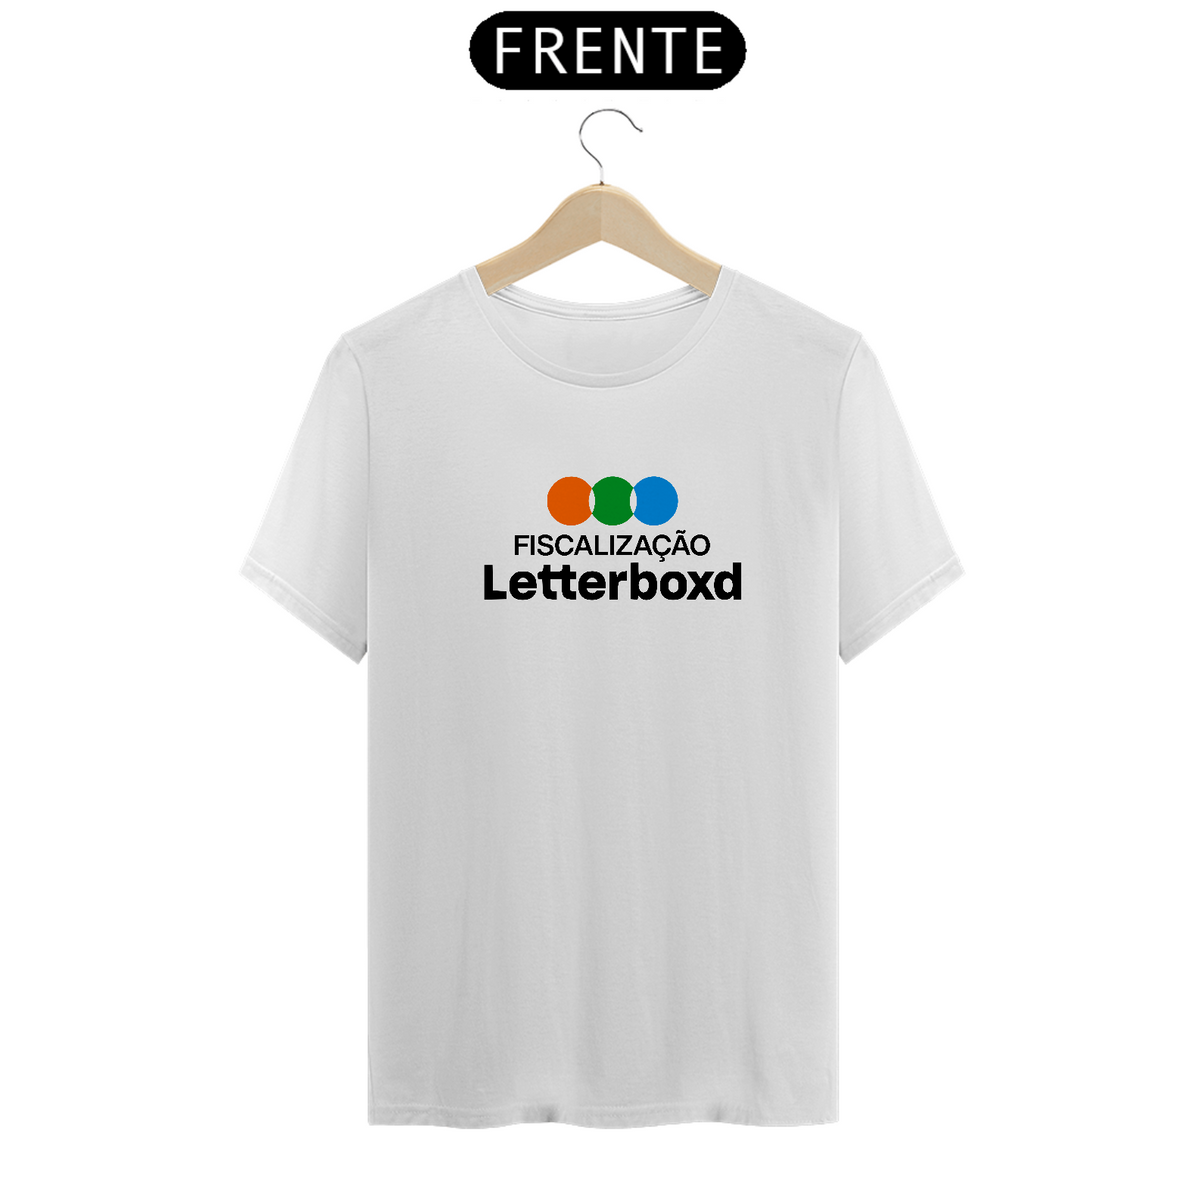 Nome do produto: T-shirt Letterboxd